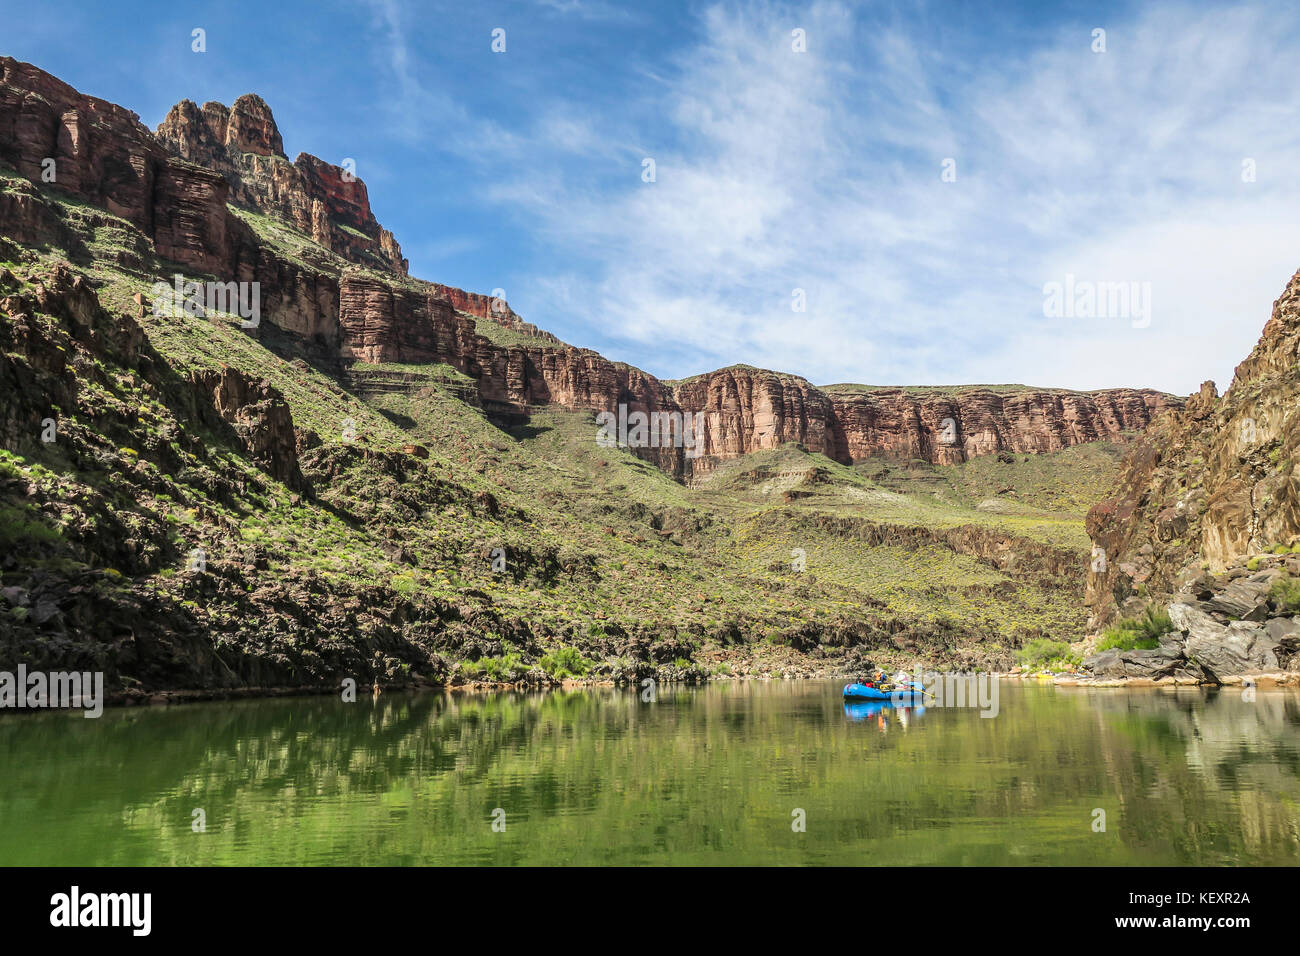 Maestoso scenario del Grand Canyon con persone di rafting sul fiume Colorado, Colorado, STATI UNITI D'AMERICA Foto Stock